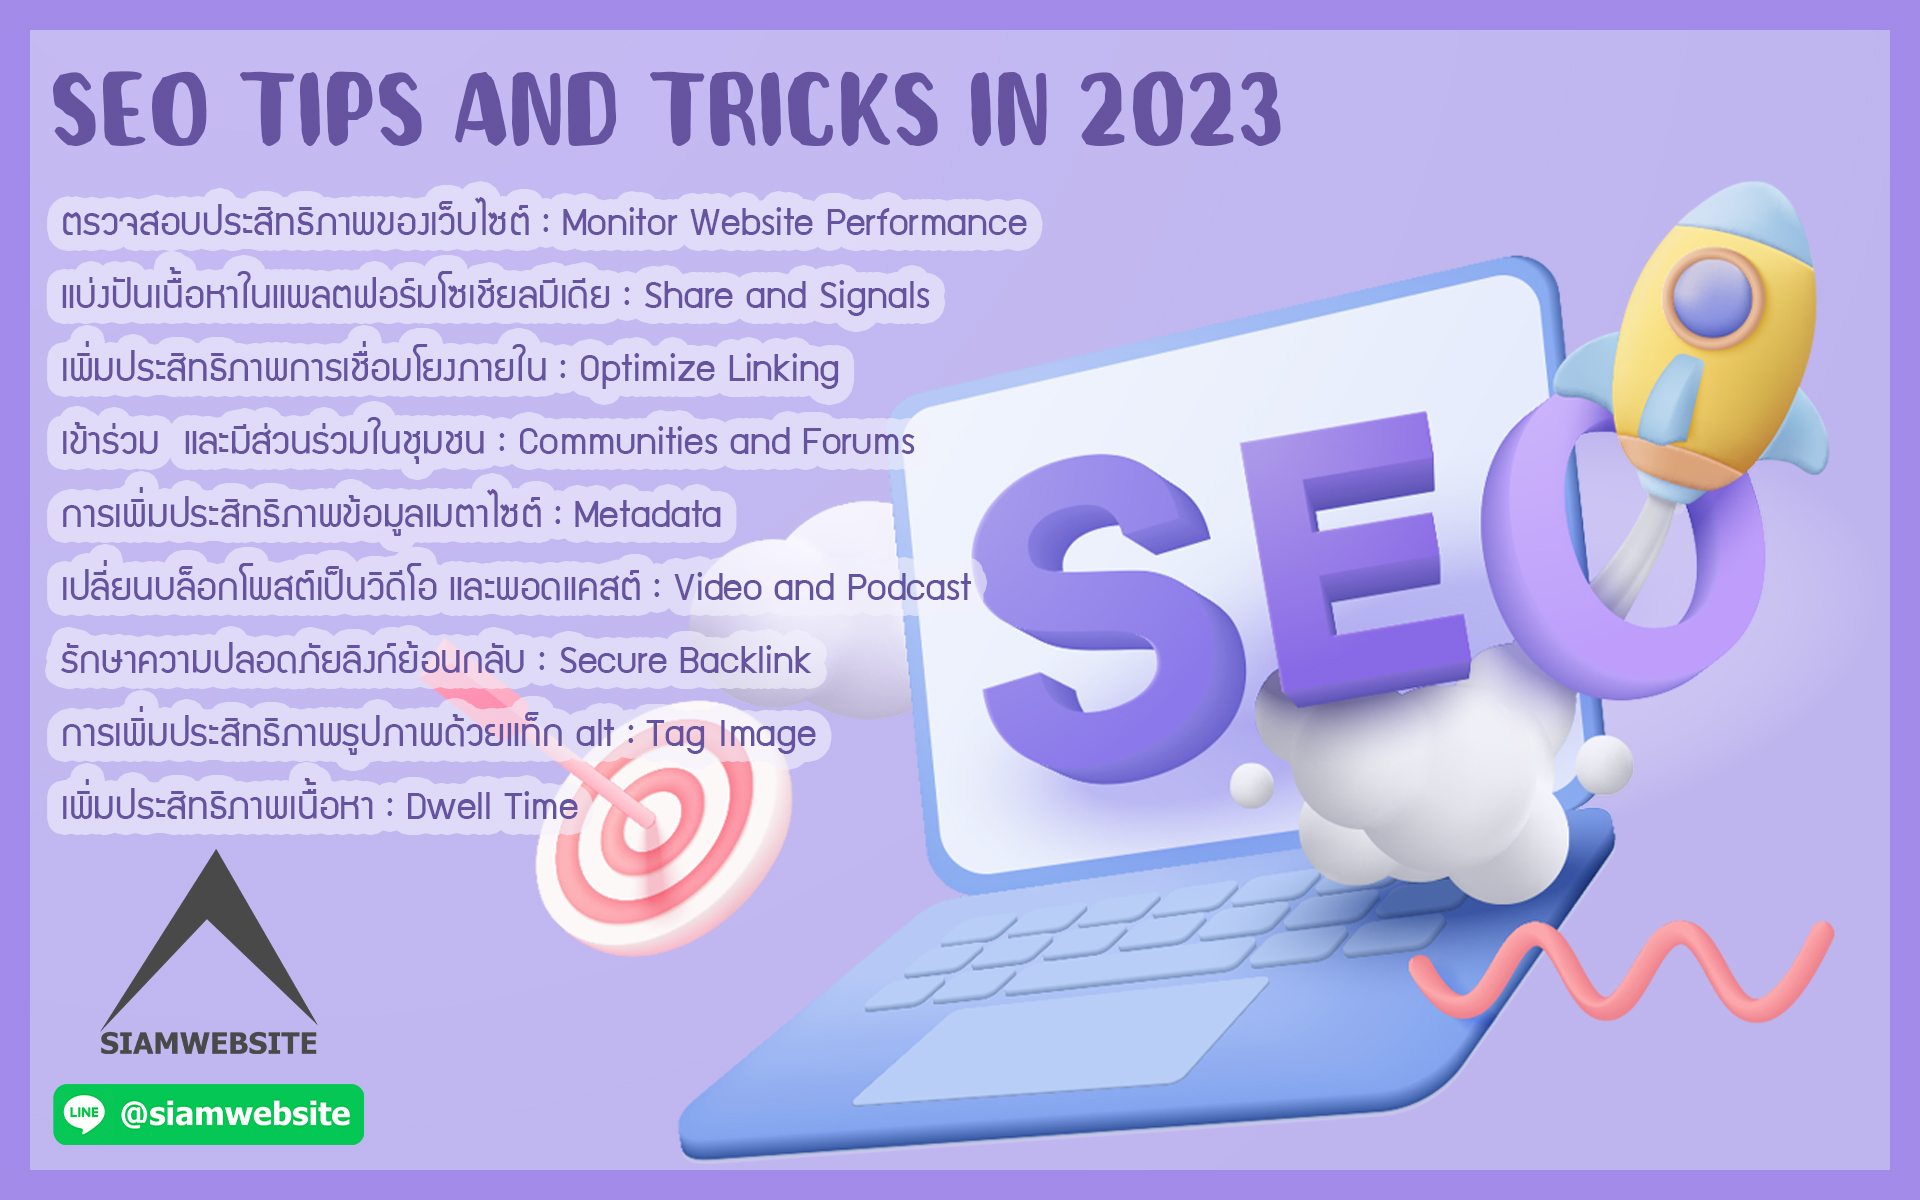 รับทําเว็บไซต์ เว็บขยายสายงาน SEO TIPS AND TRICKS IN 2023 | TTT-WEBSITE 